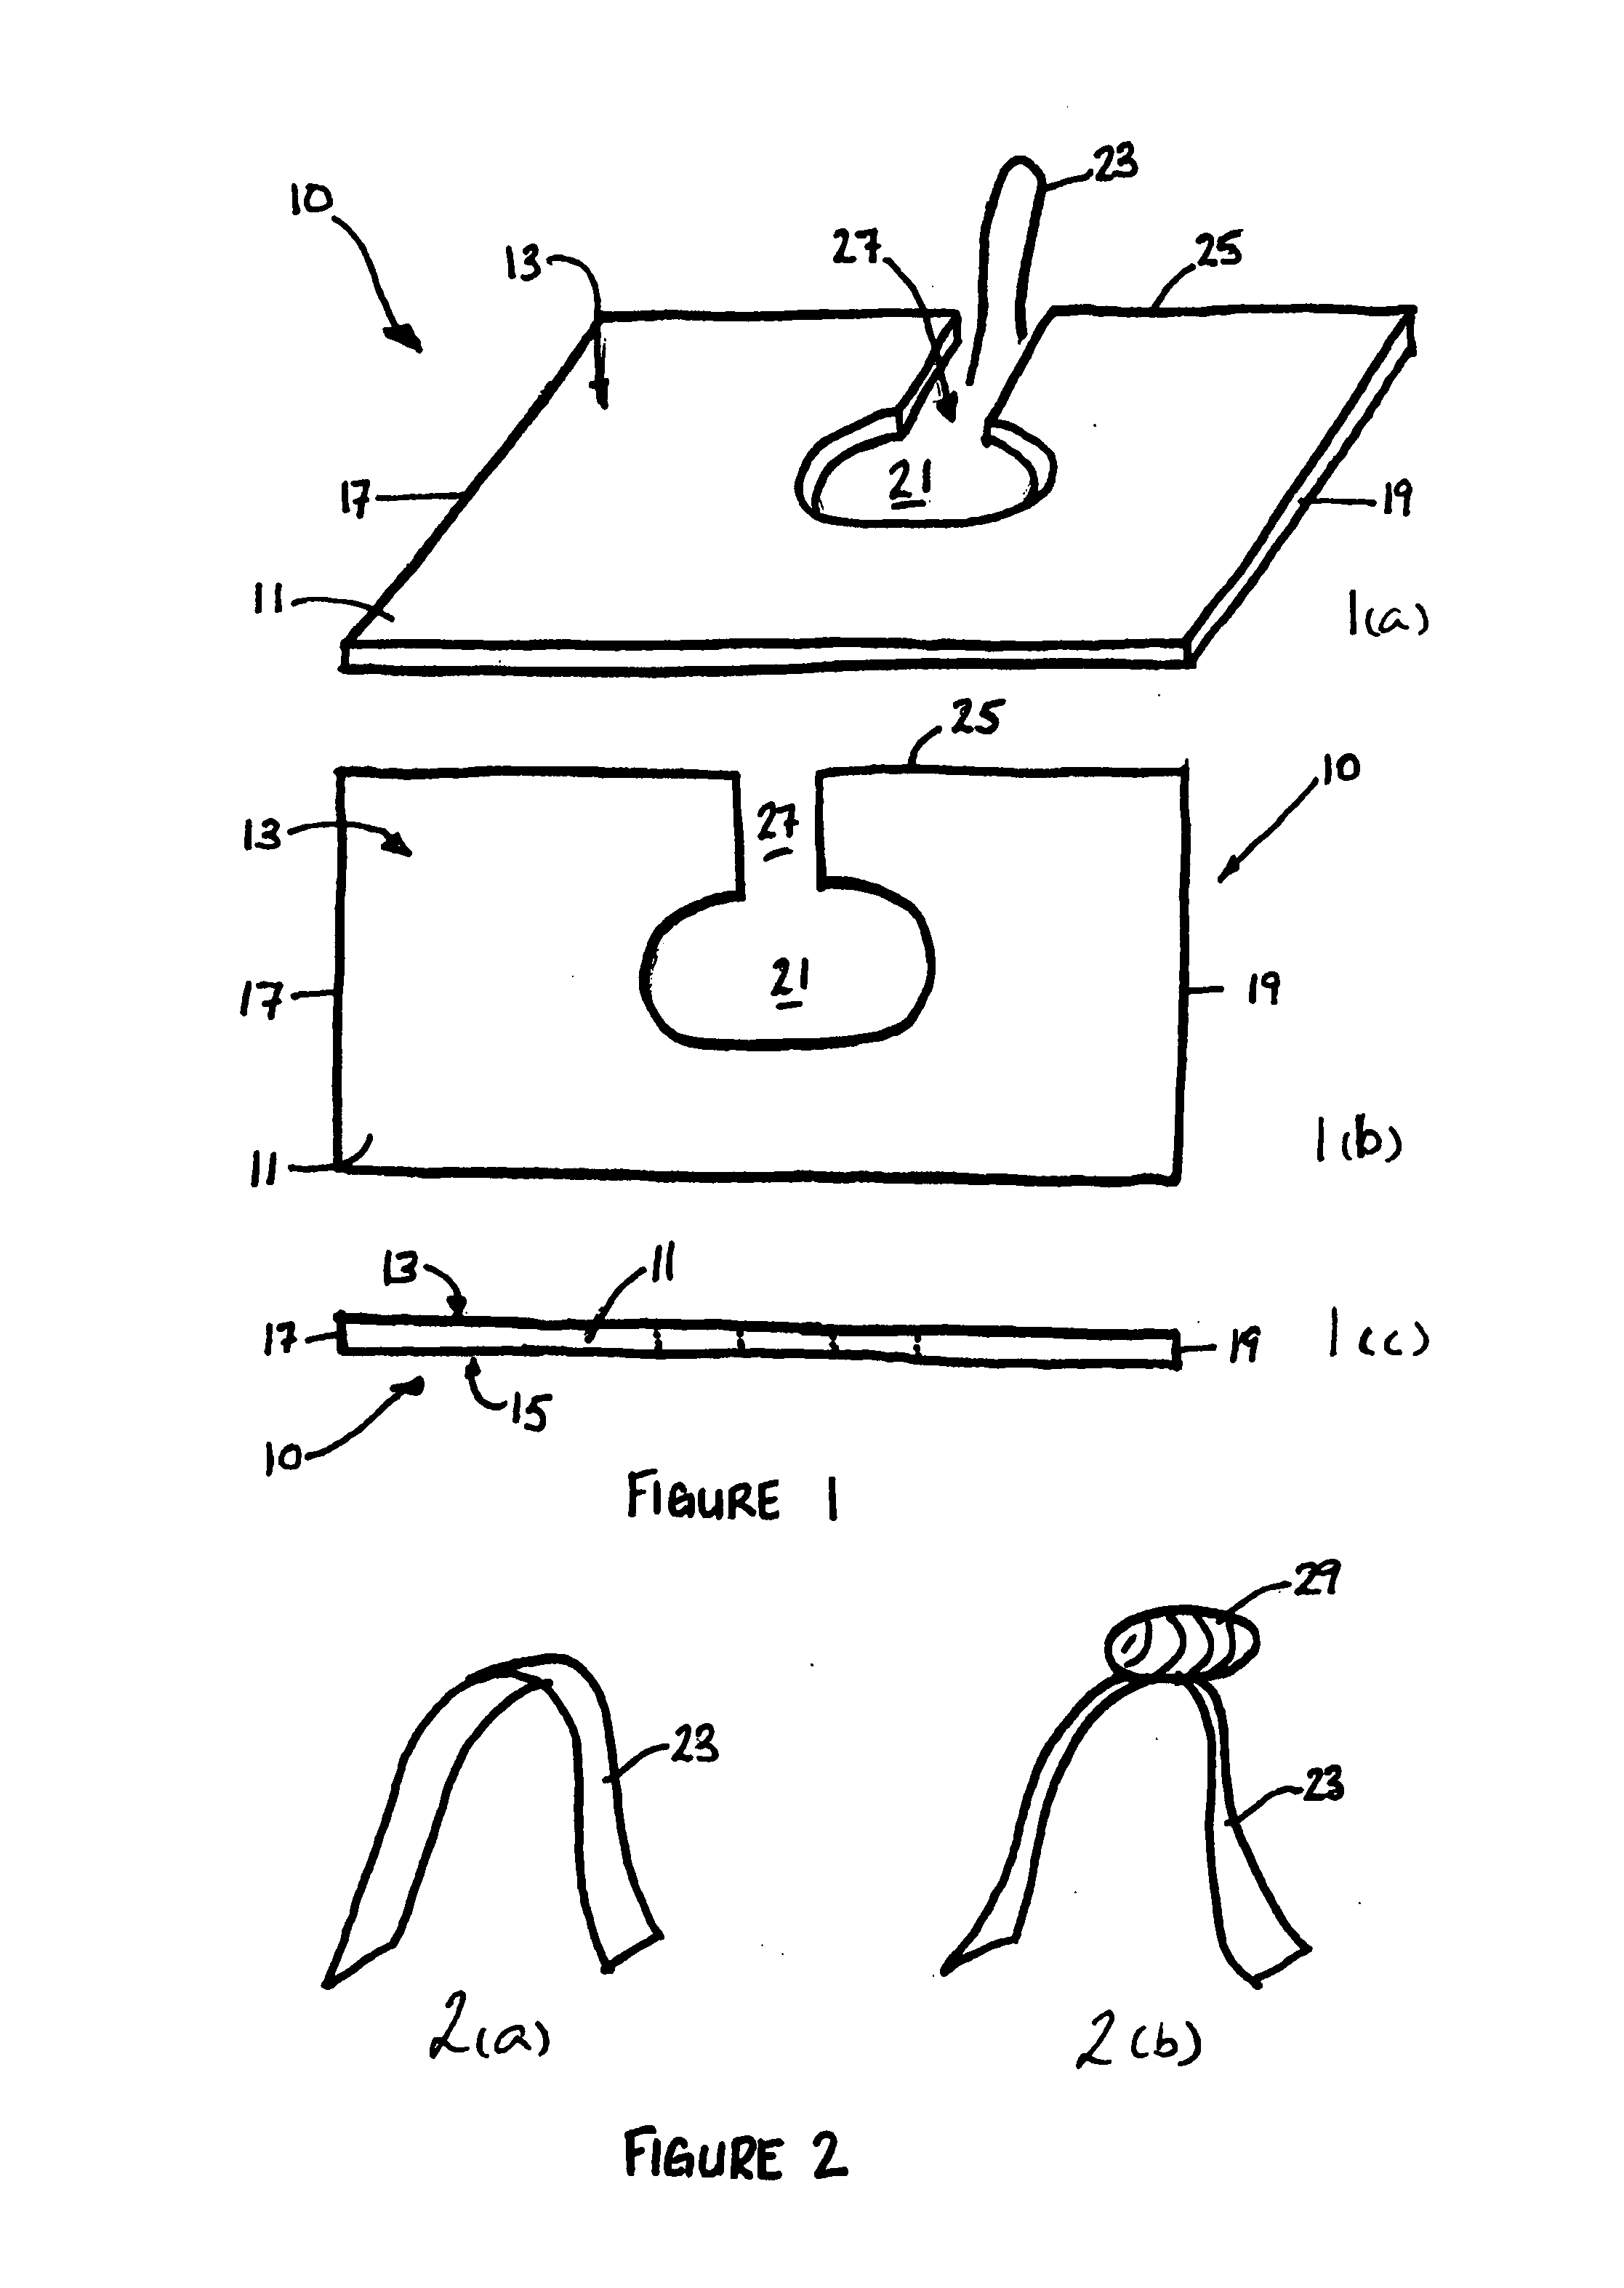 Ribbon-bow making tool